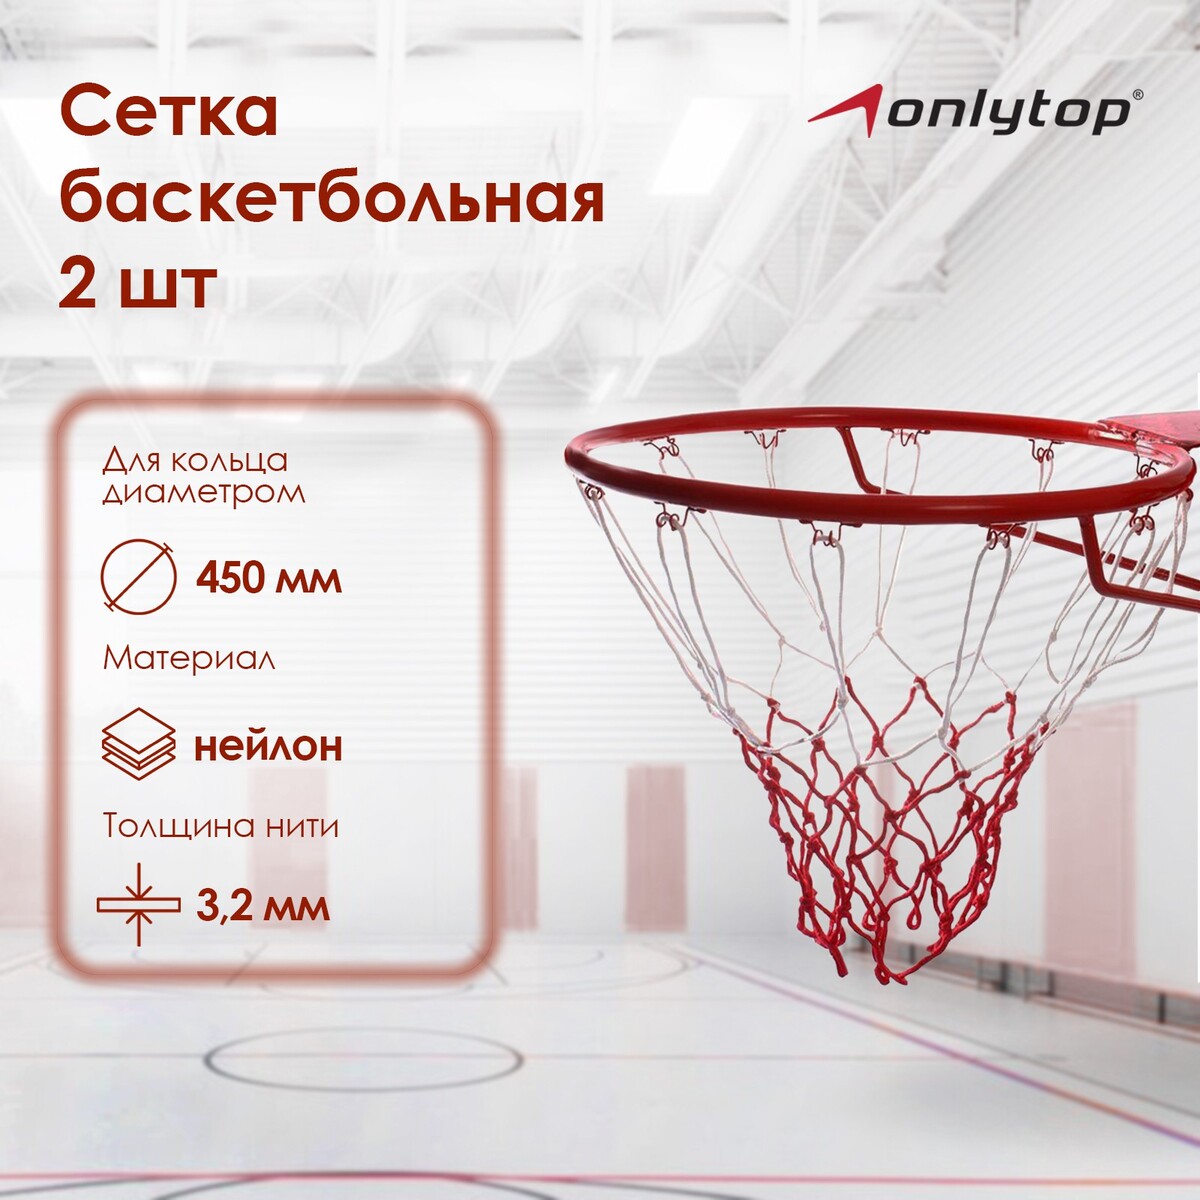 Сетка баскетбольная onlytop, 50 см, нить 3,2 мм, 2 шт. сетка для настольного тенниса onlytop 155х13 см раздвижная